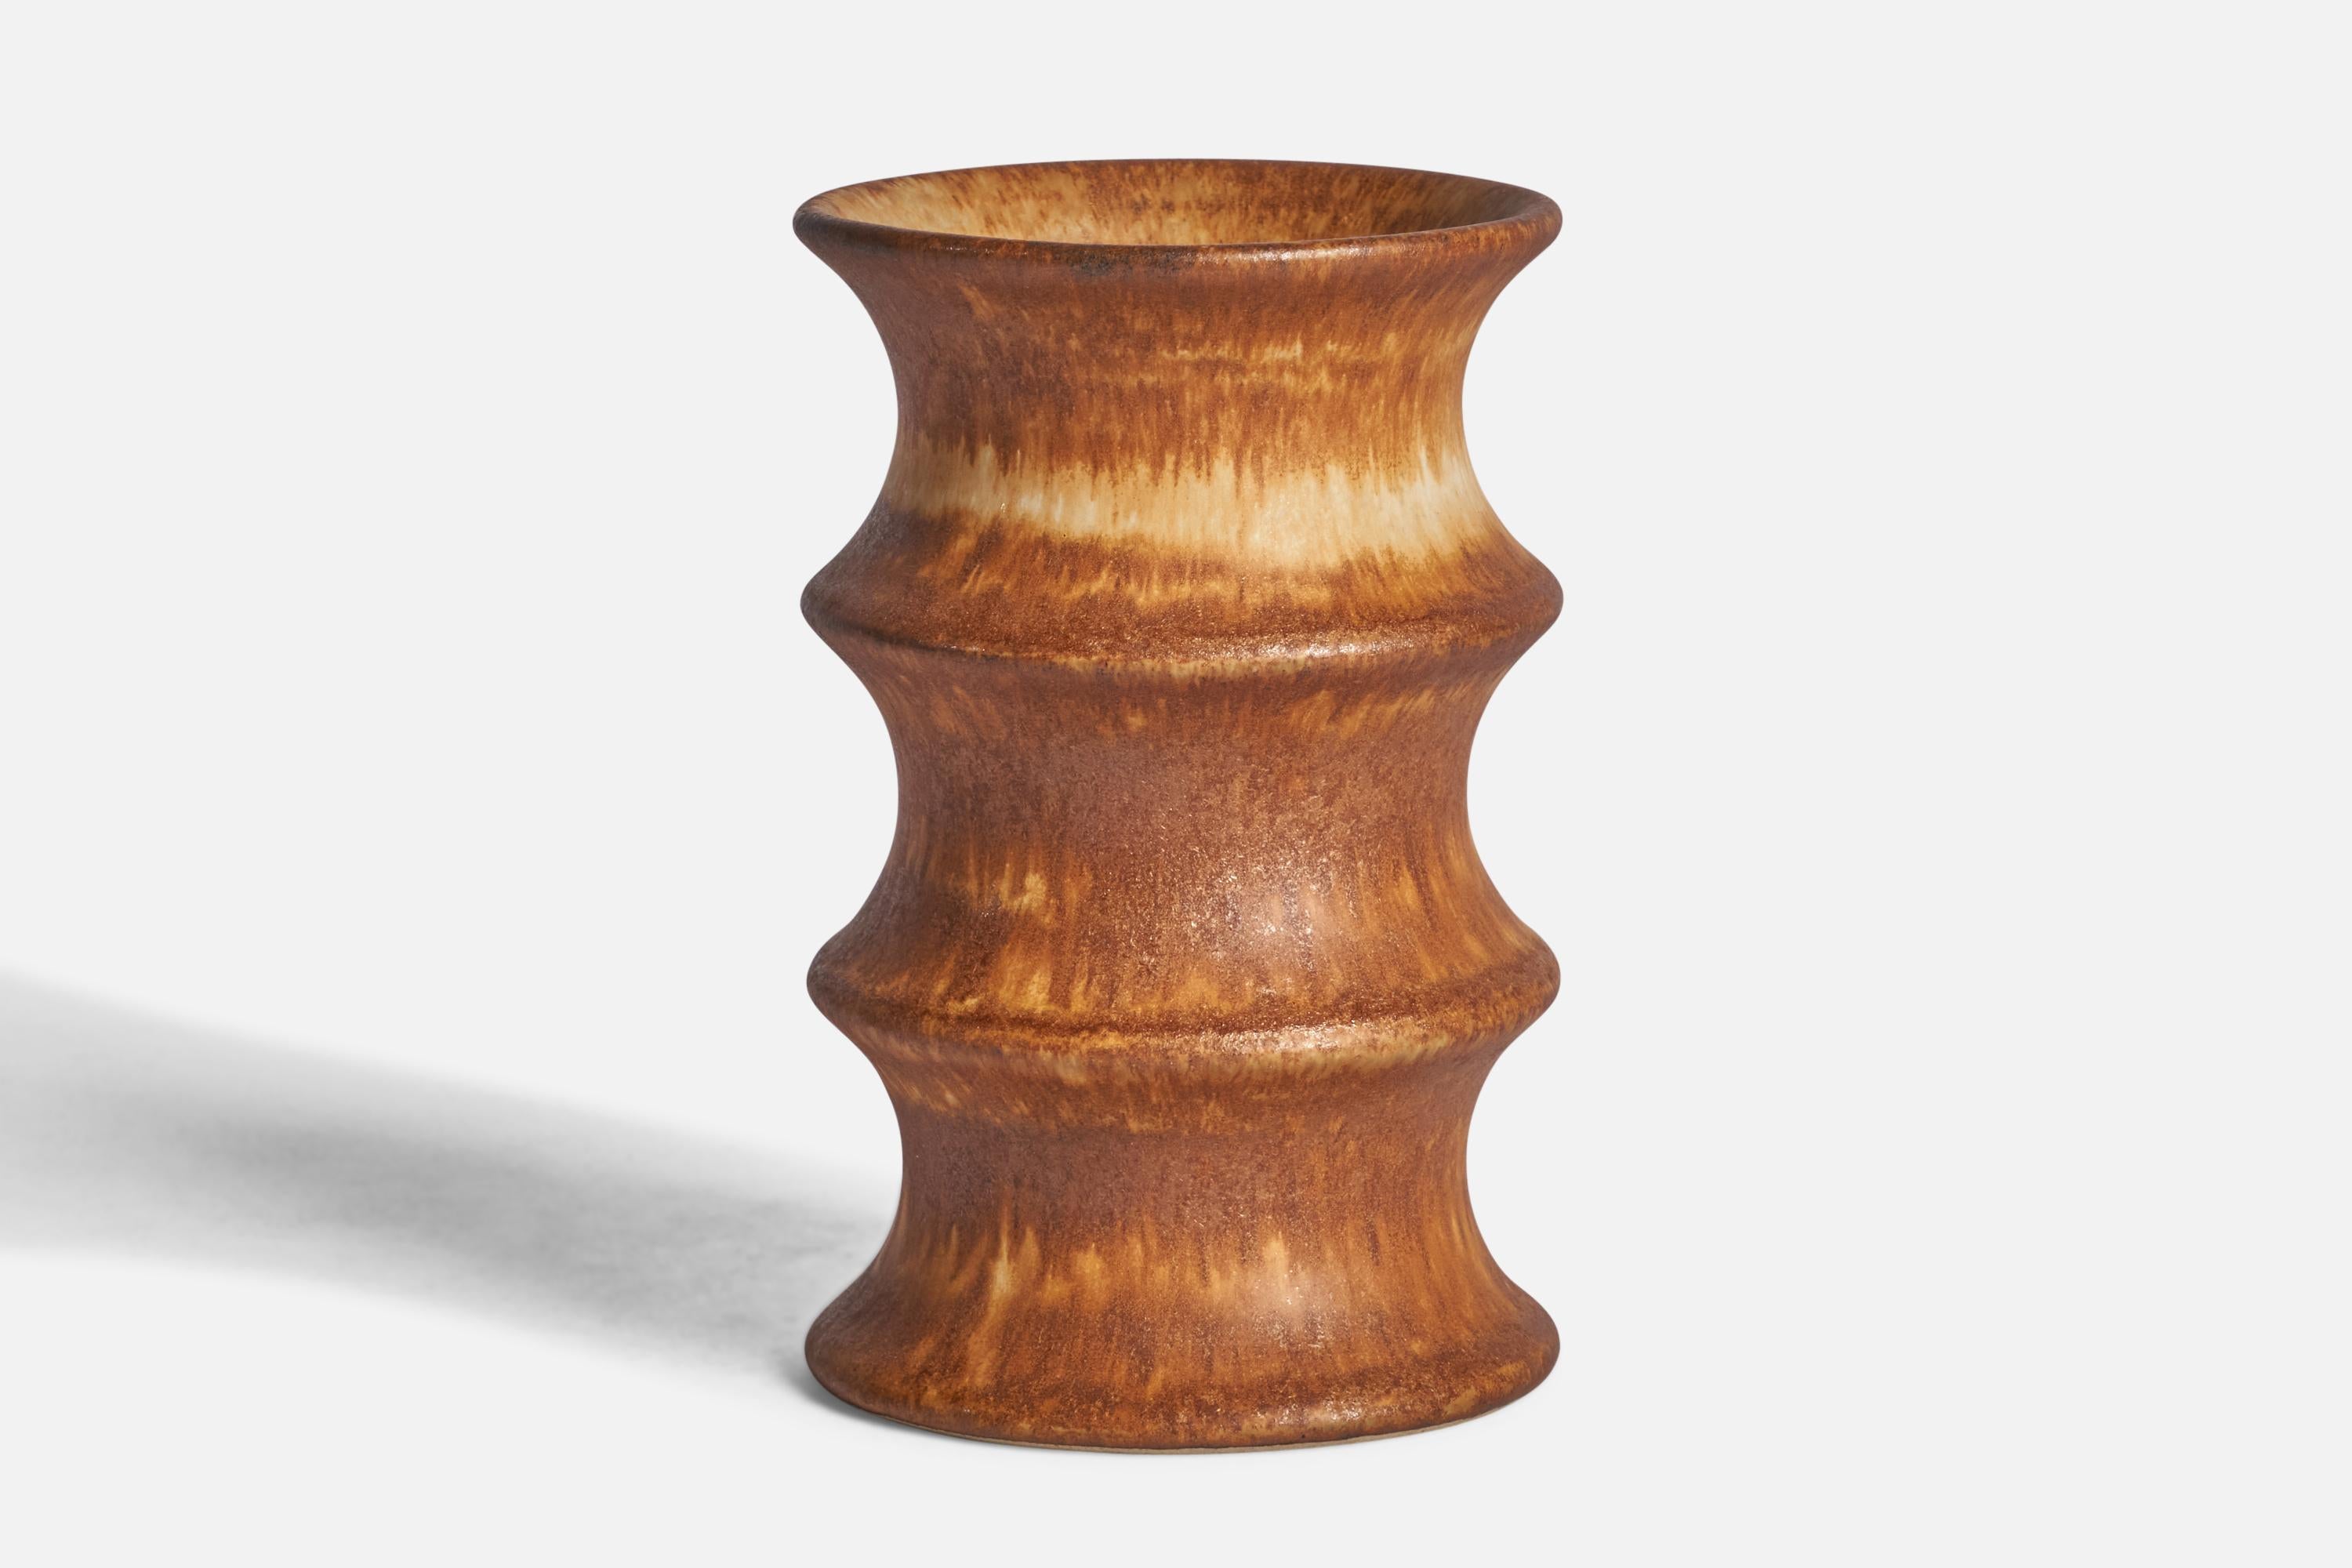 Vase en grès émaillé brun conçu par Bruno Karlsson et produit par Ego Stengods, Suède, c. 1960.

